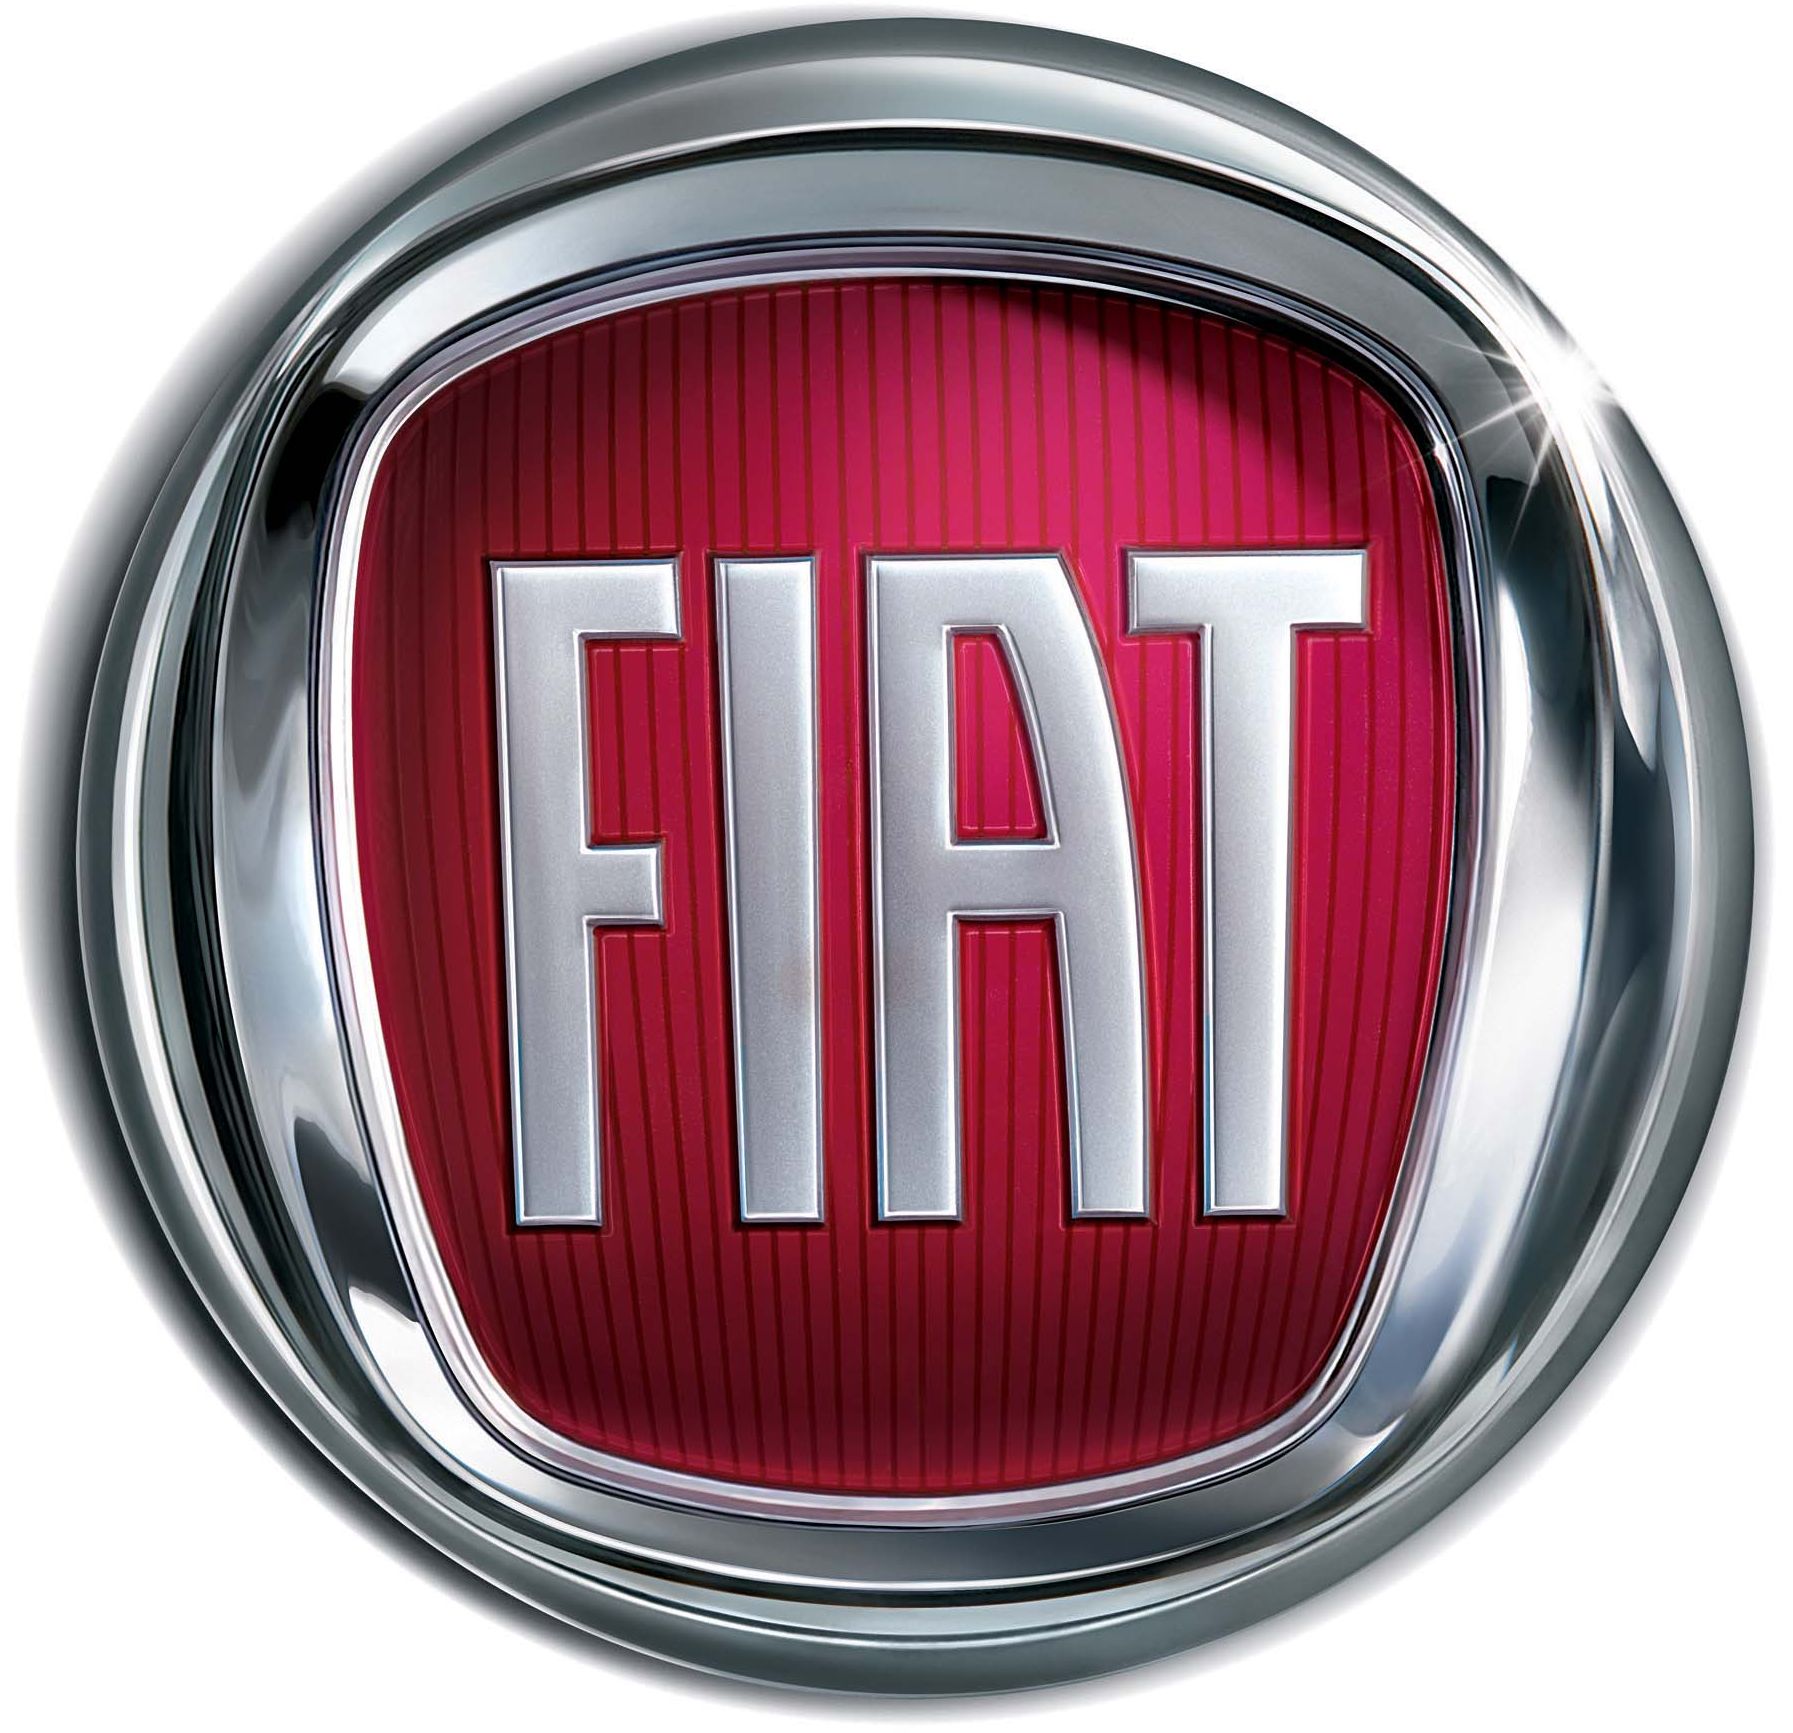 Fiat Fahrzeuge - Autolook AG - Autogarage in Trübbach